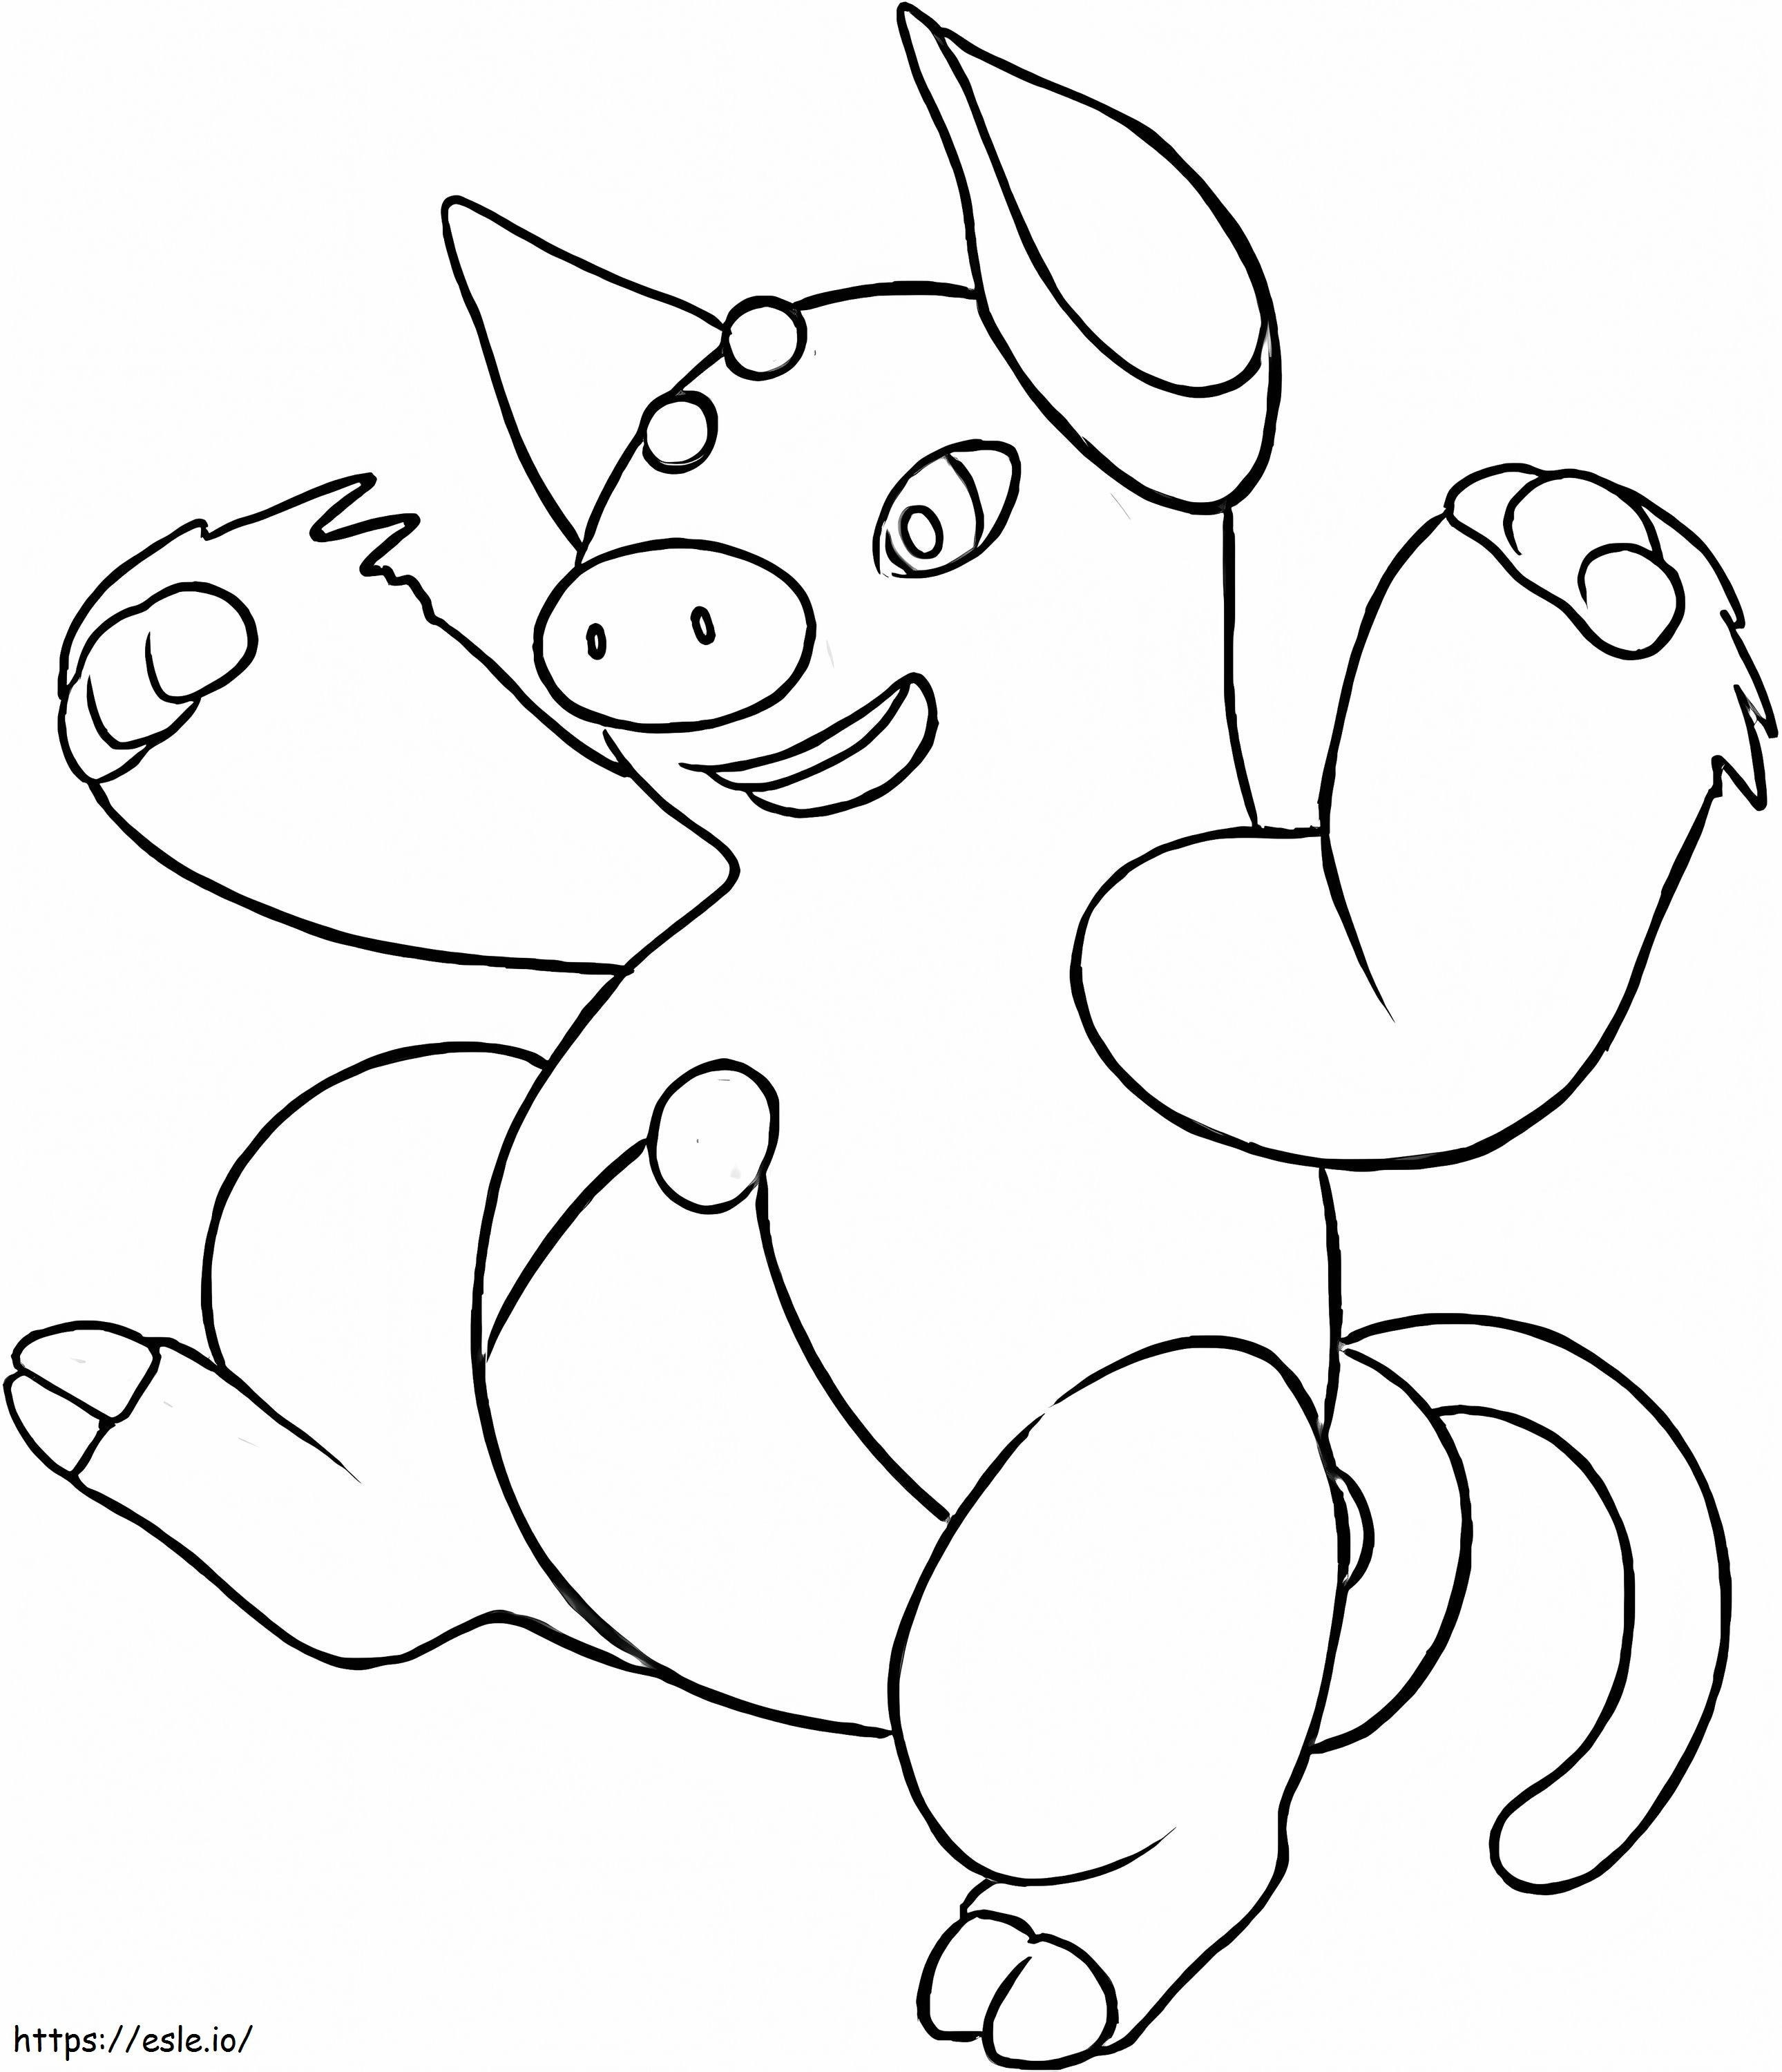 Coloriage Je ne suis pas Pokémon à imprimer dessin